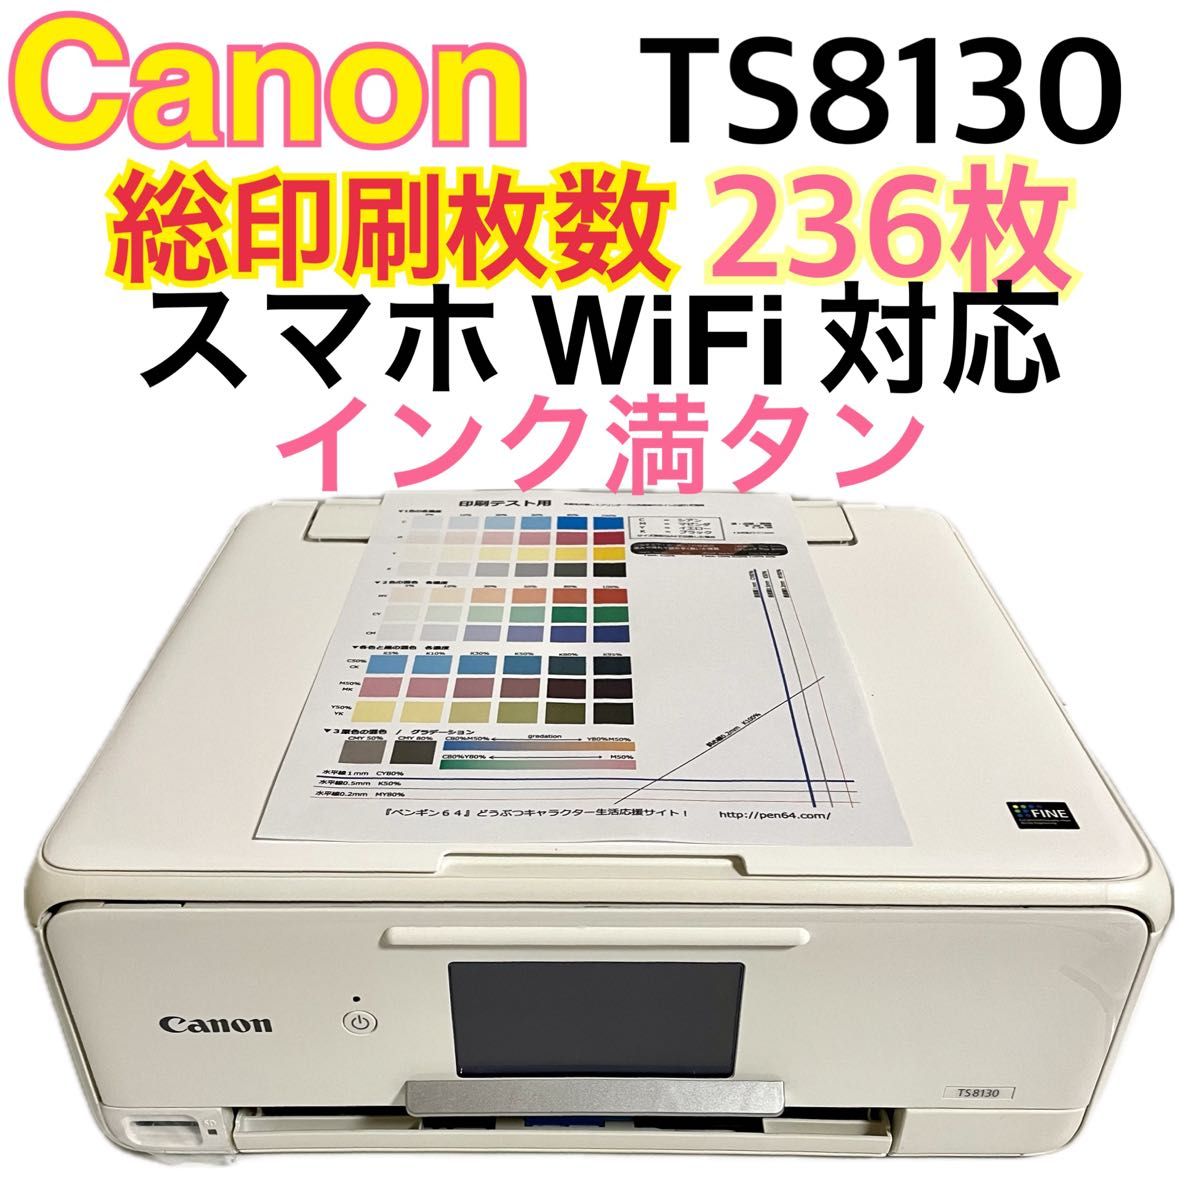 Canon キヤノン TS8130 プリンター 印刷枚数236枚 複合機 インクジェットプリンター インク 複合機